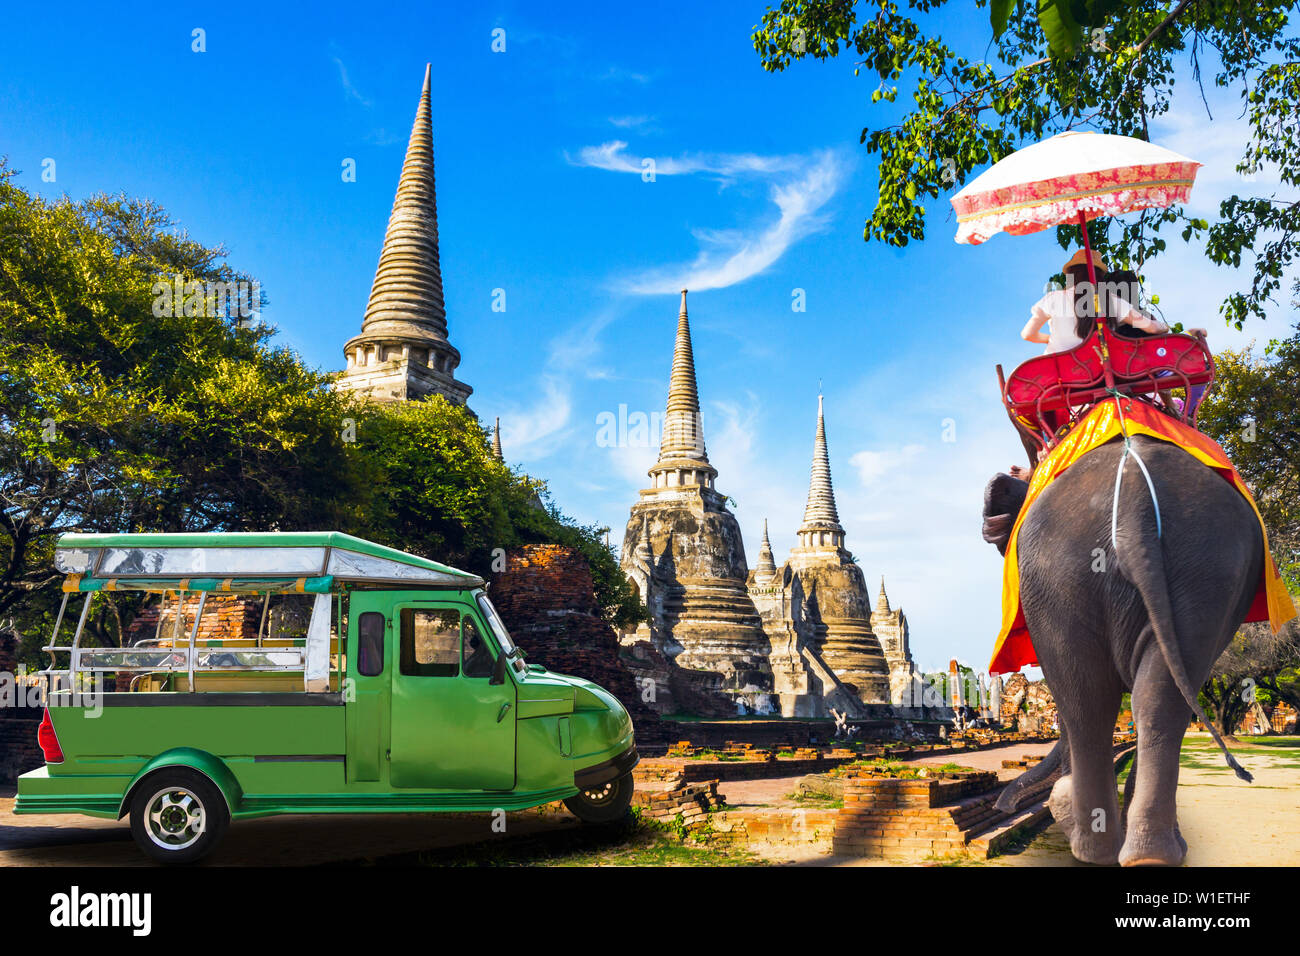 Reisen Thailand Ayutthaya - Wat Phra Si Sanphet Ayutthaya - Ayutthaya Historical Park als Weltkulturerbe und der Elefant betrachtet worden ist, Stockfoto